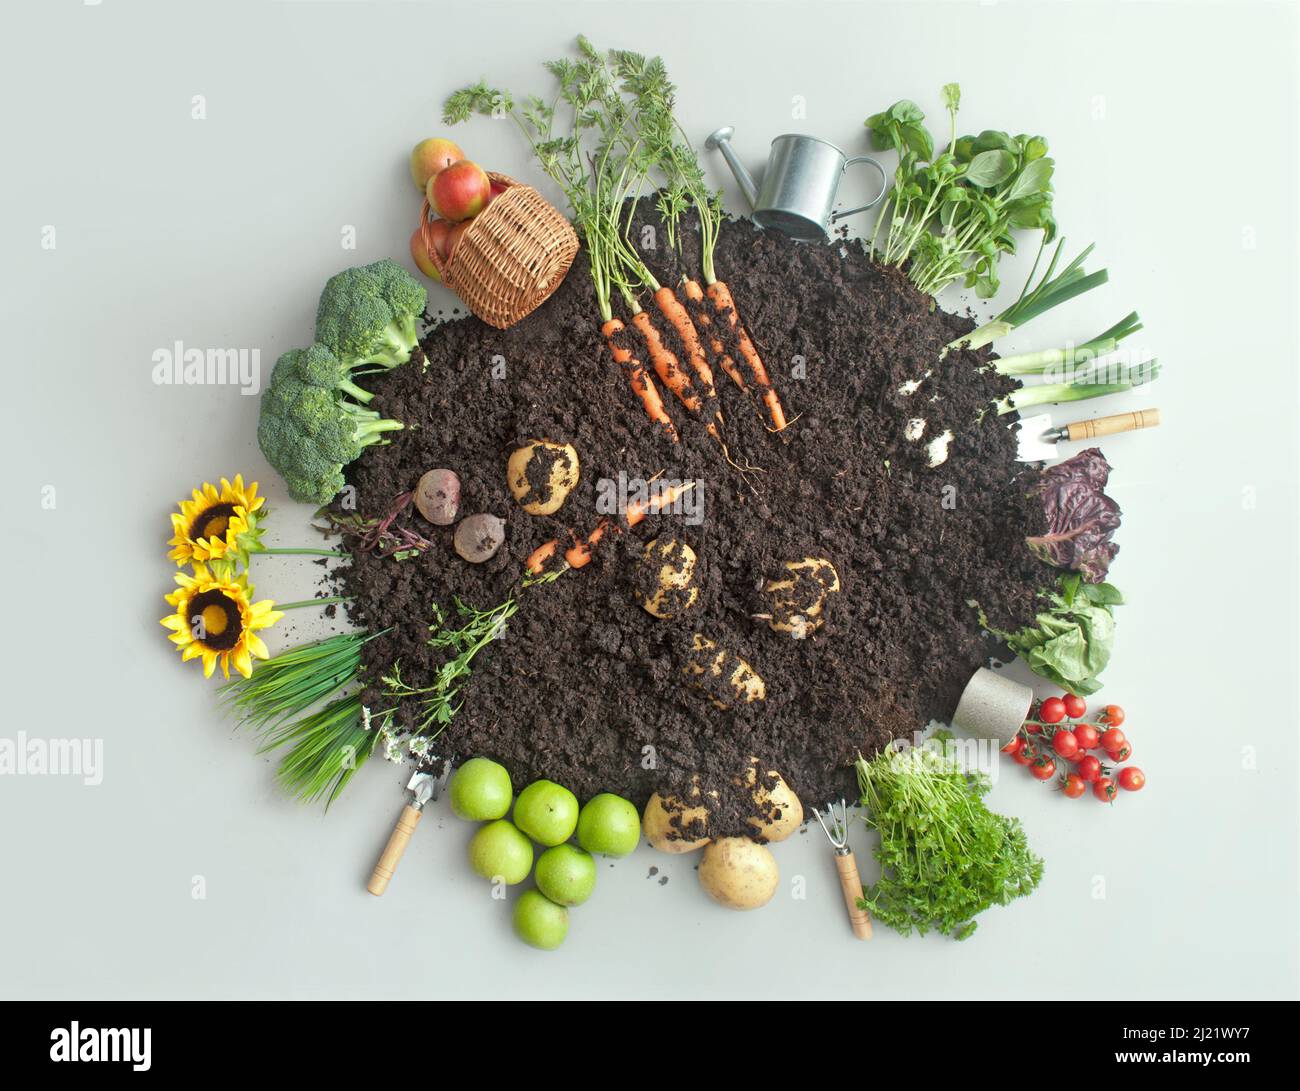 Frutas y verduras que crecen en compost circular de jardín incluyendo zanahorias, papas y lechuga Foto de stock